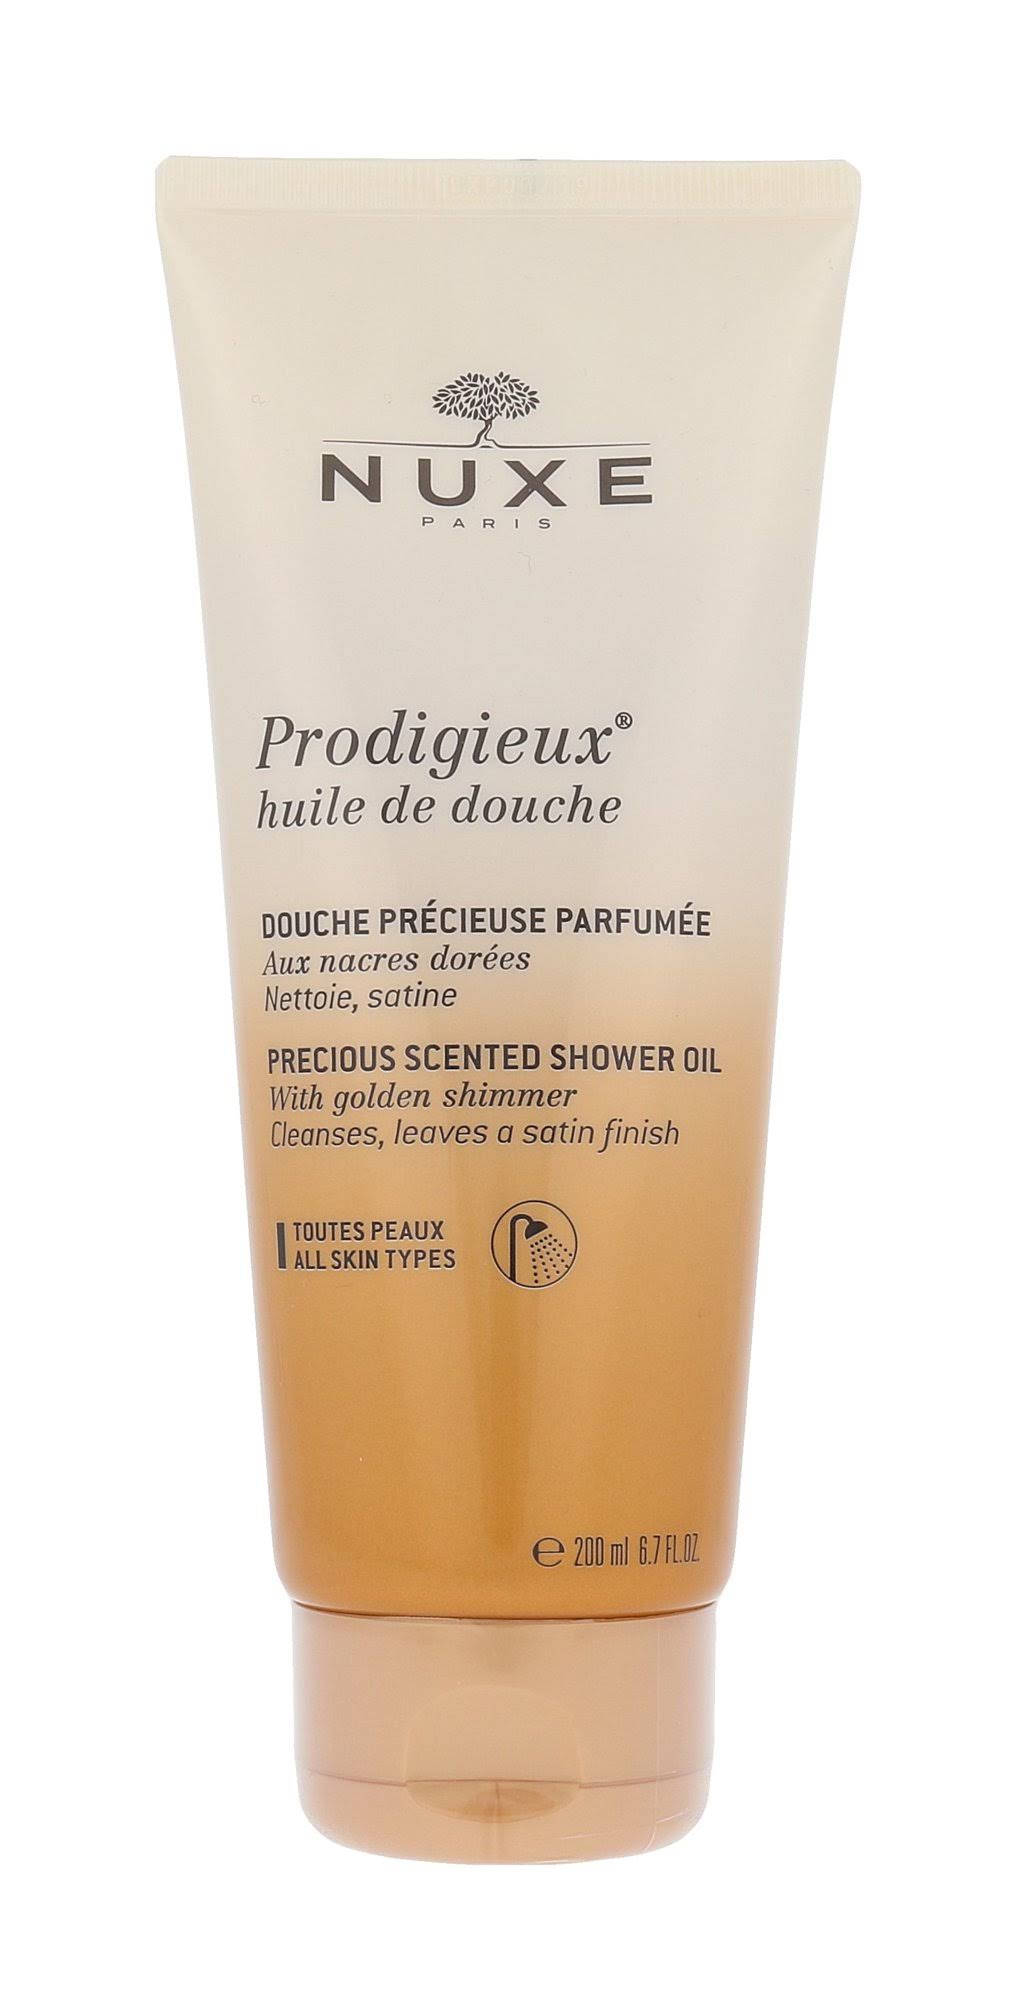 Nuxe Prodigieux Shower Oil - Golden Shimmer, All Skin Types, 200ml